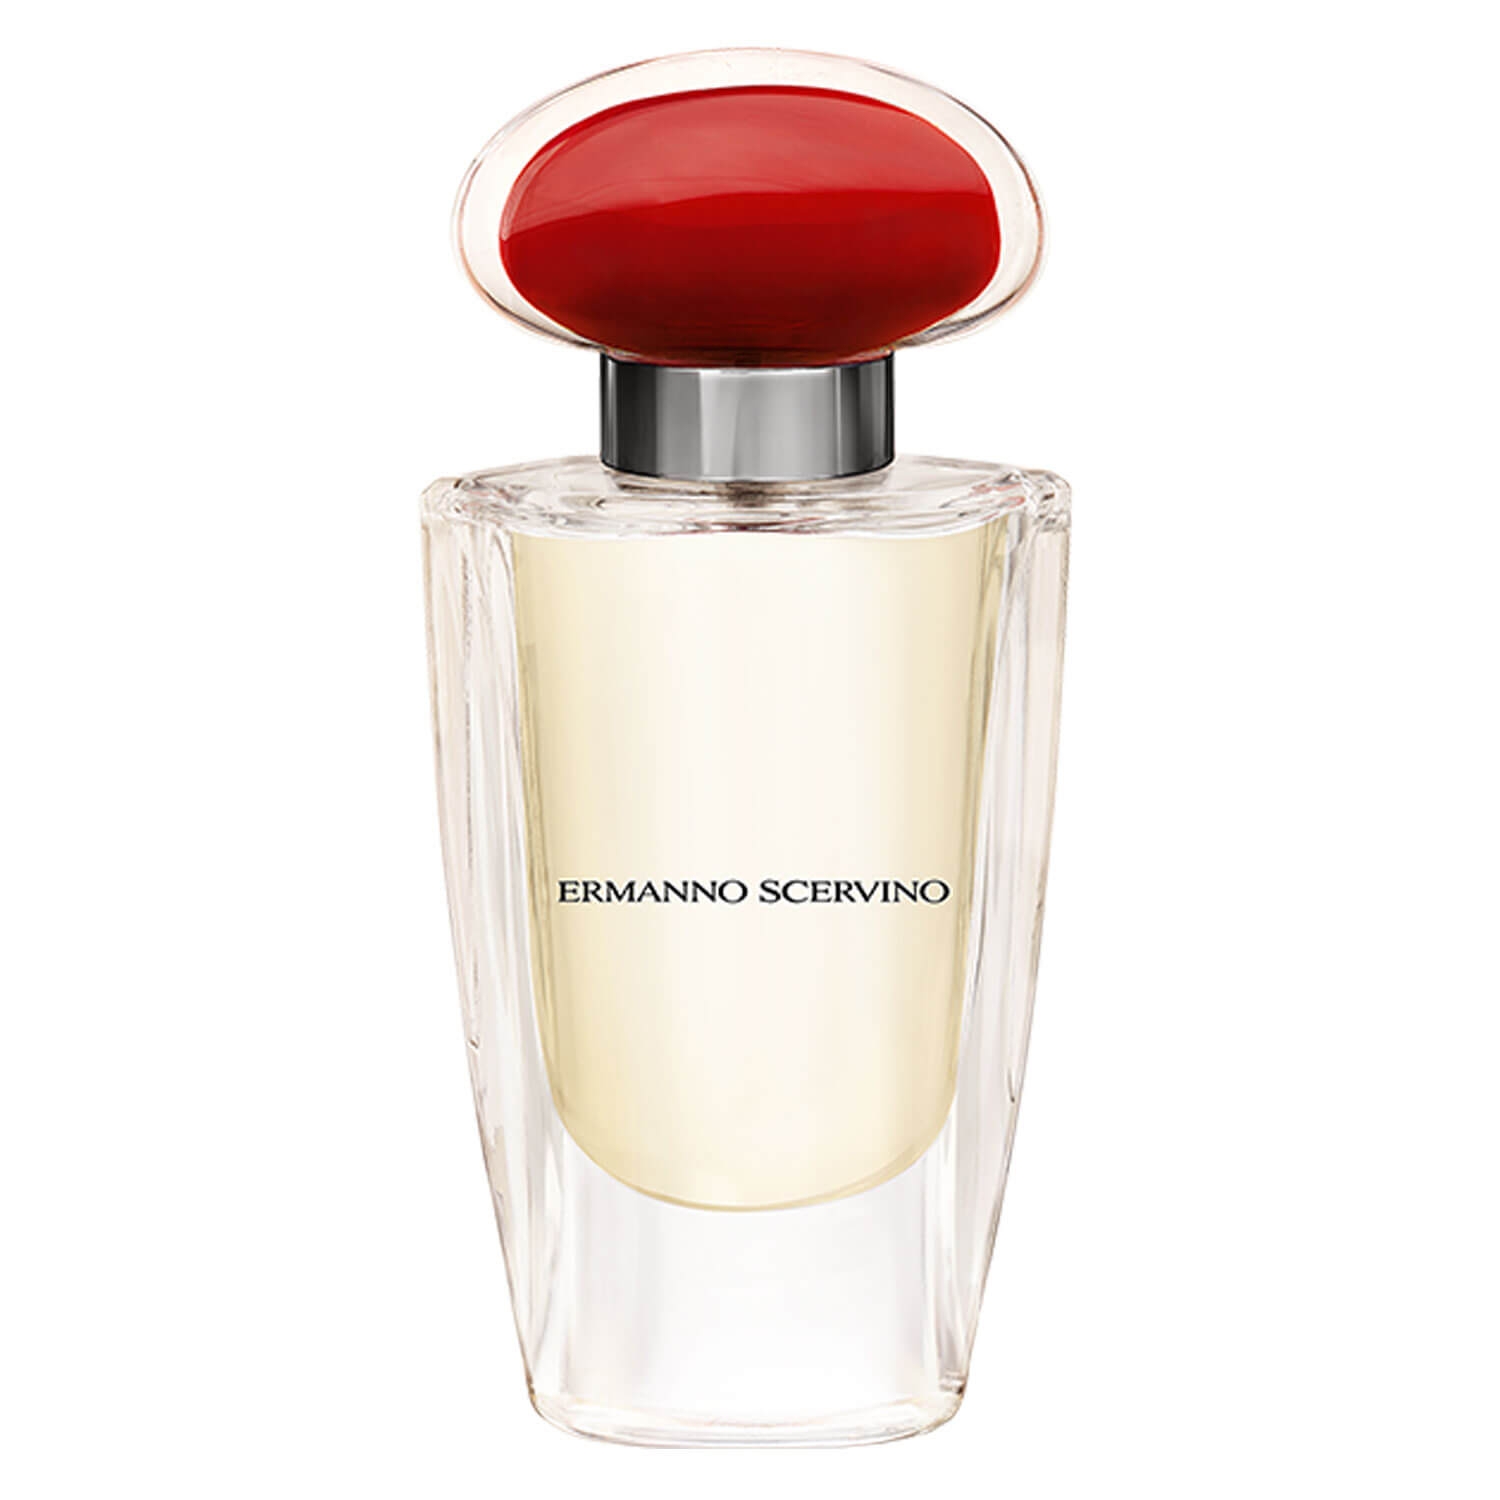 Product image from Ermano Scervino - Eau de Parfum